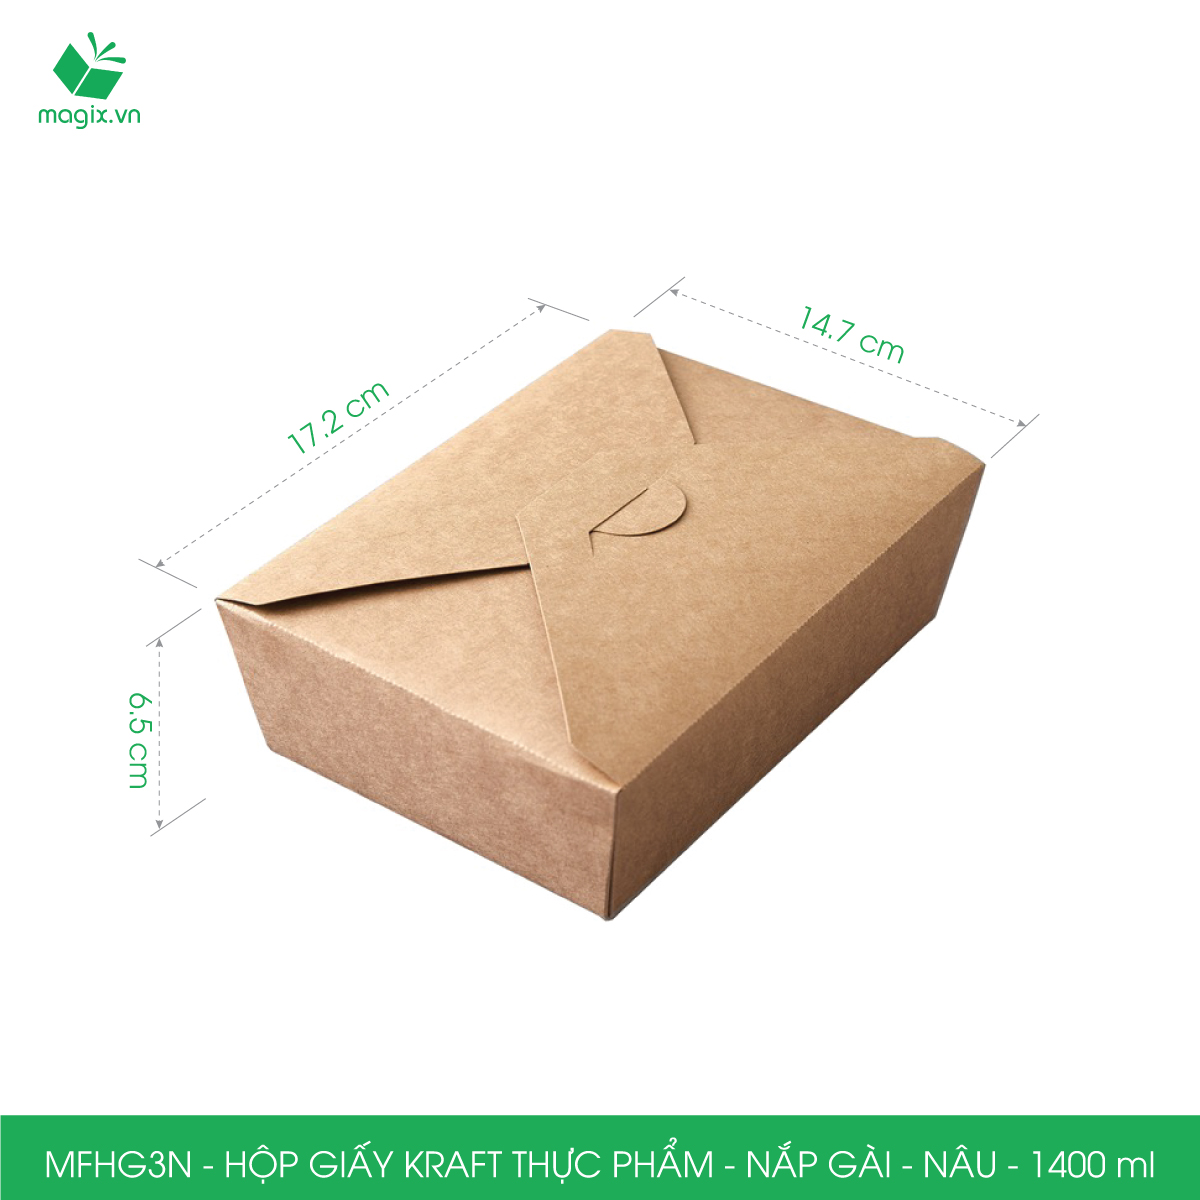 Hình ảnh MFHG3N - 25 hộp giấy kraft thực phẩm 1400ml, hộp giấy nắp gập màu nâu đựng thức ăn, hộp giấy nắp gài gói đồ ăn mang đi 